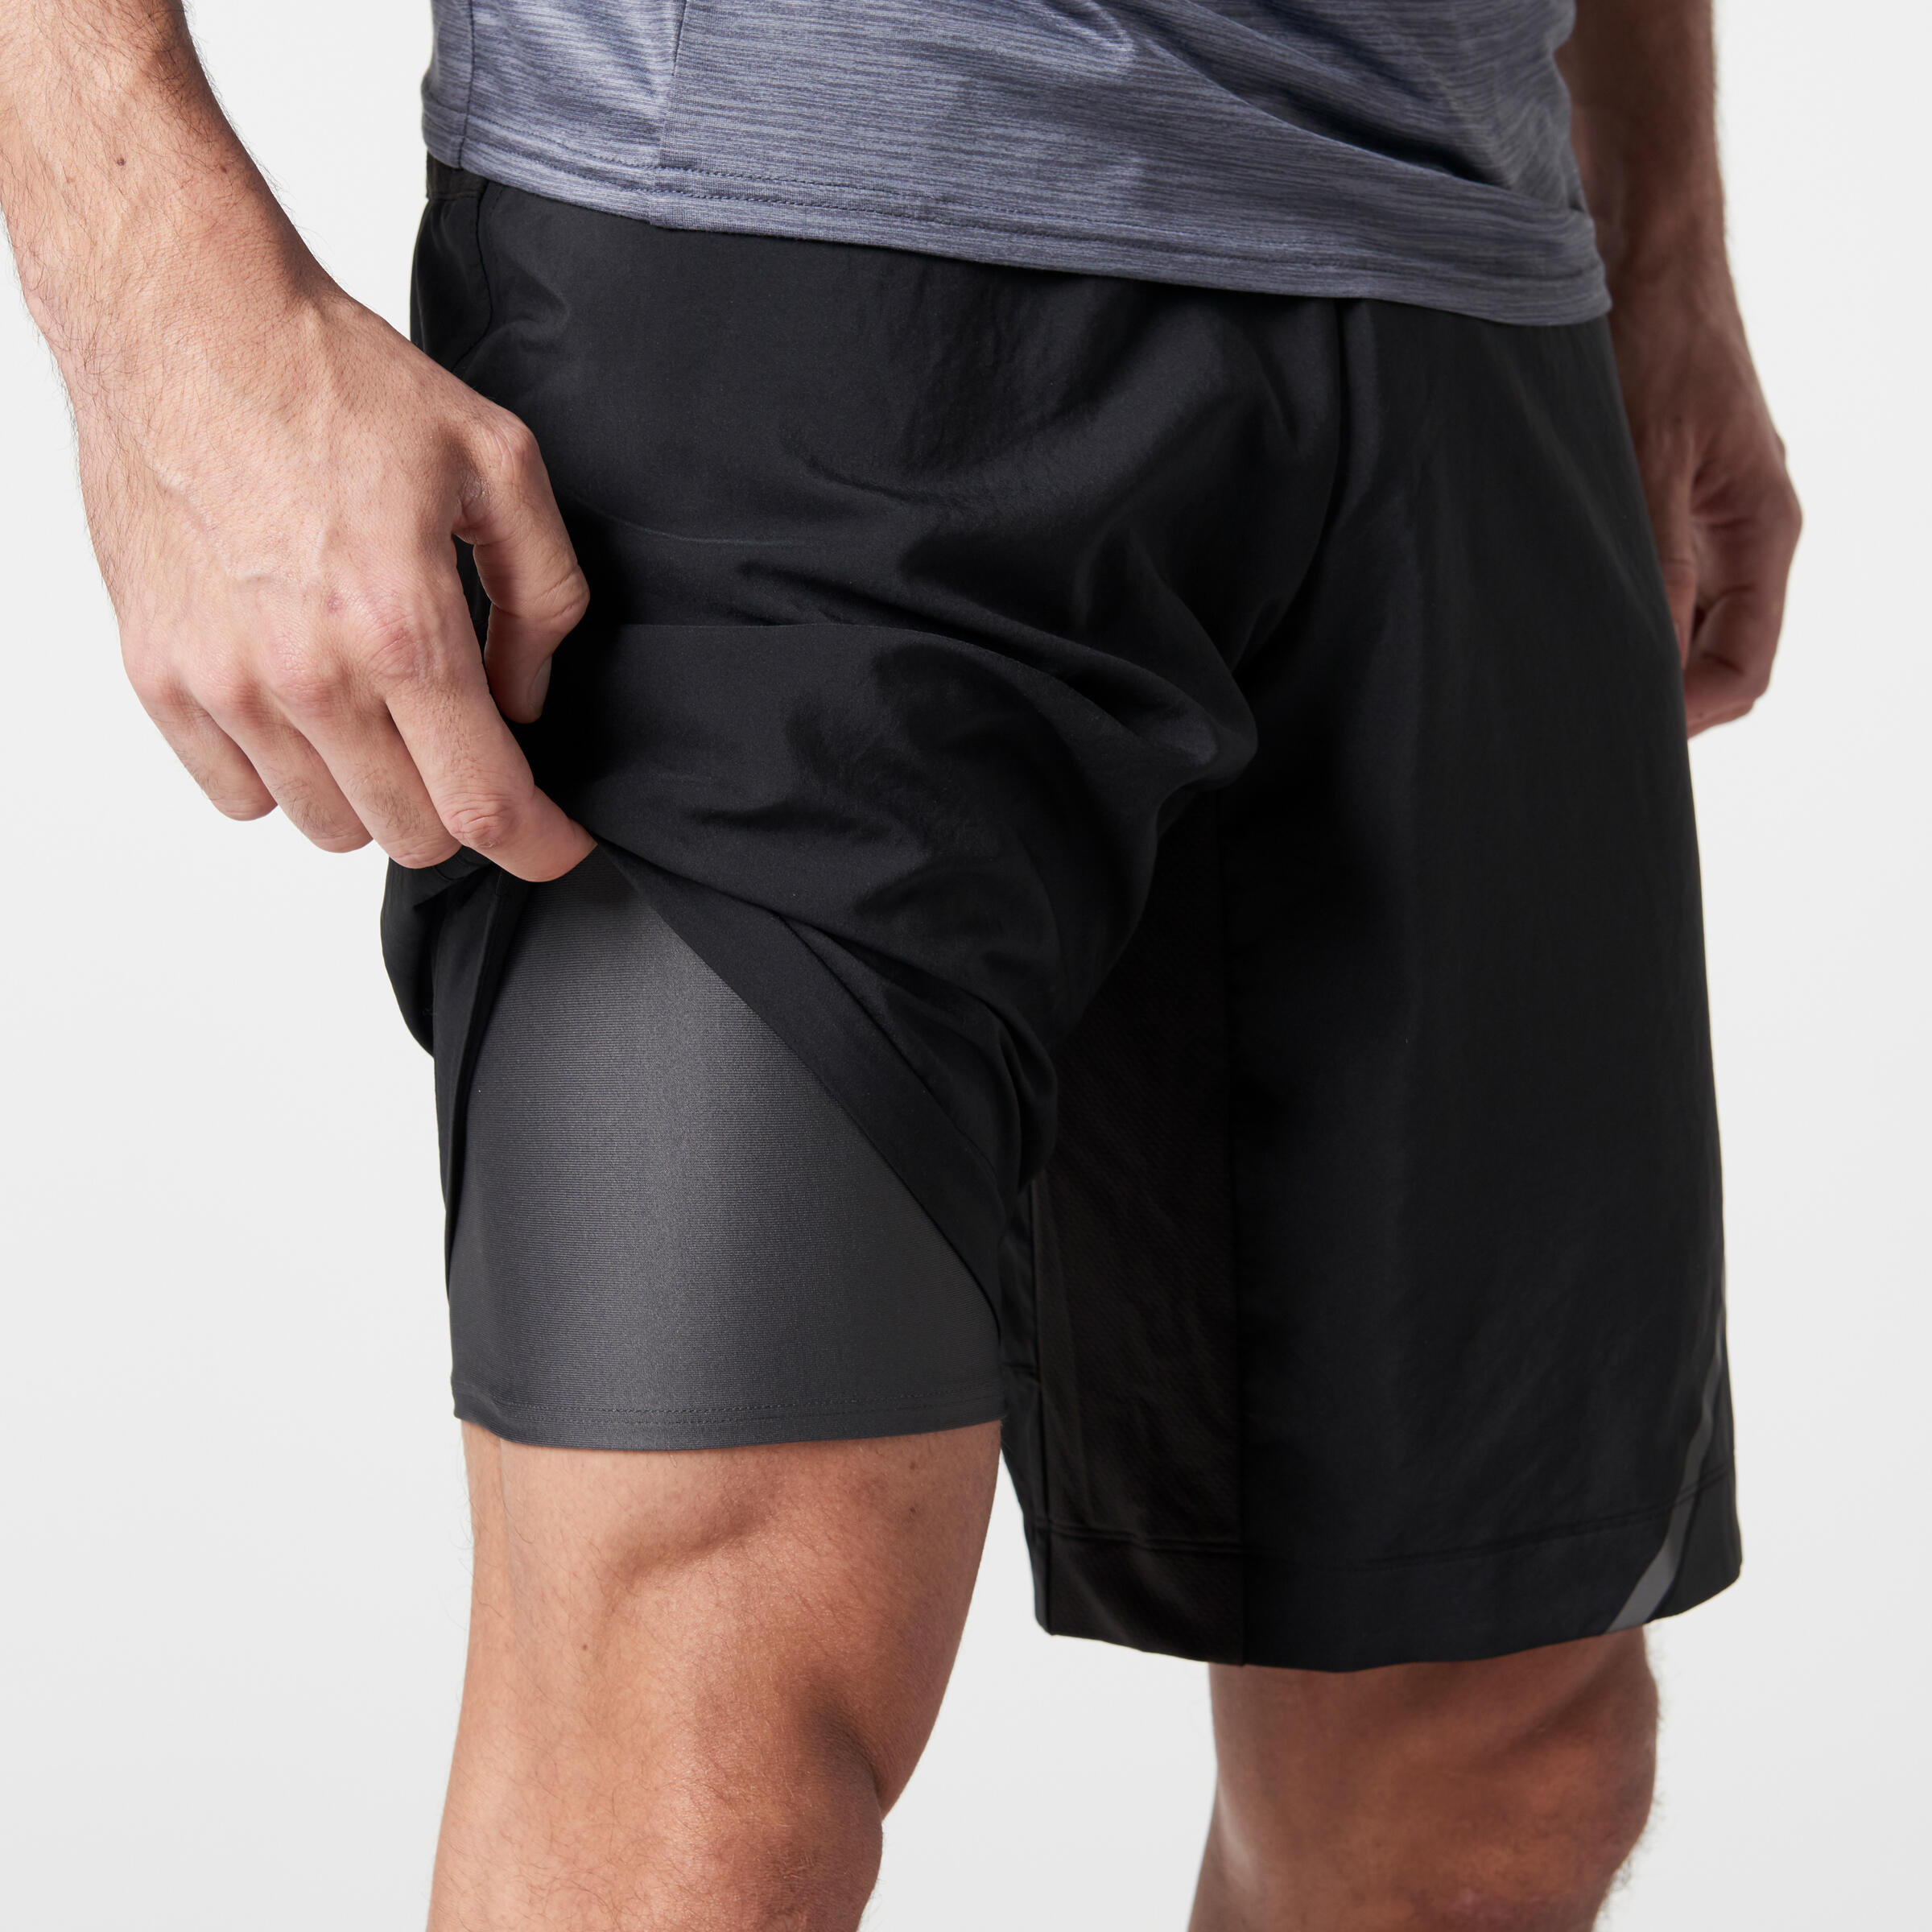 Herren Shorts 2 In 1 Pocket Pants mit integrierten Schichten Black Pocket XXL 